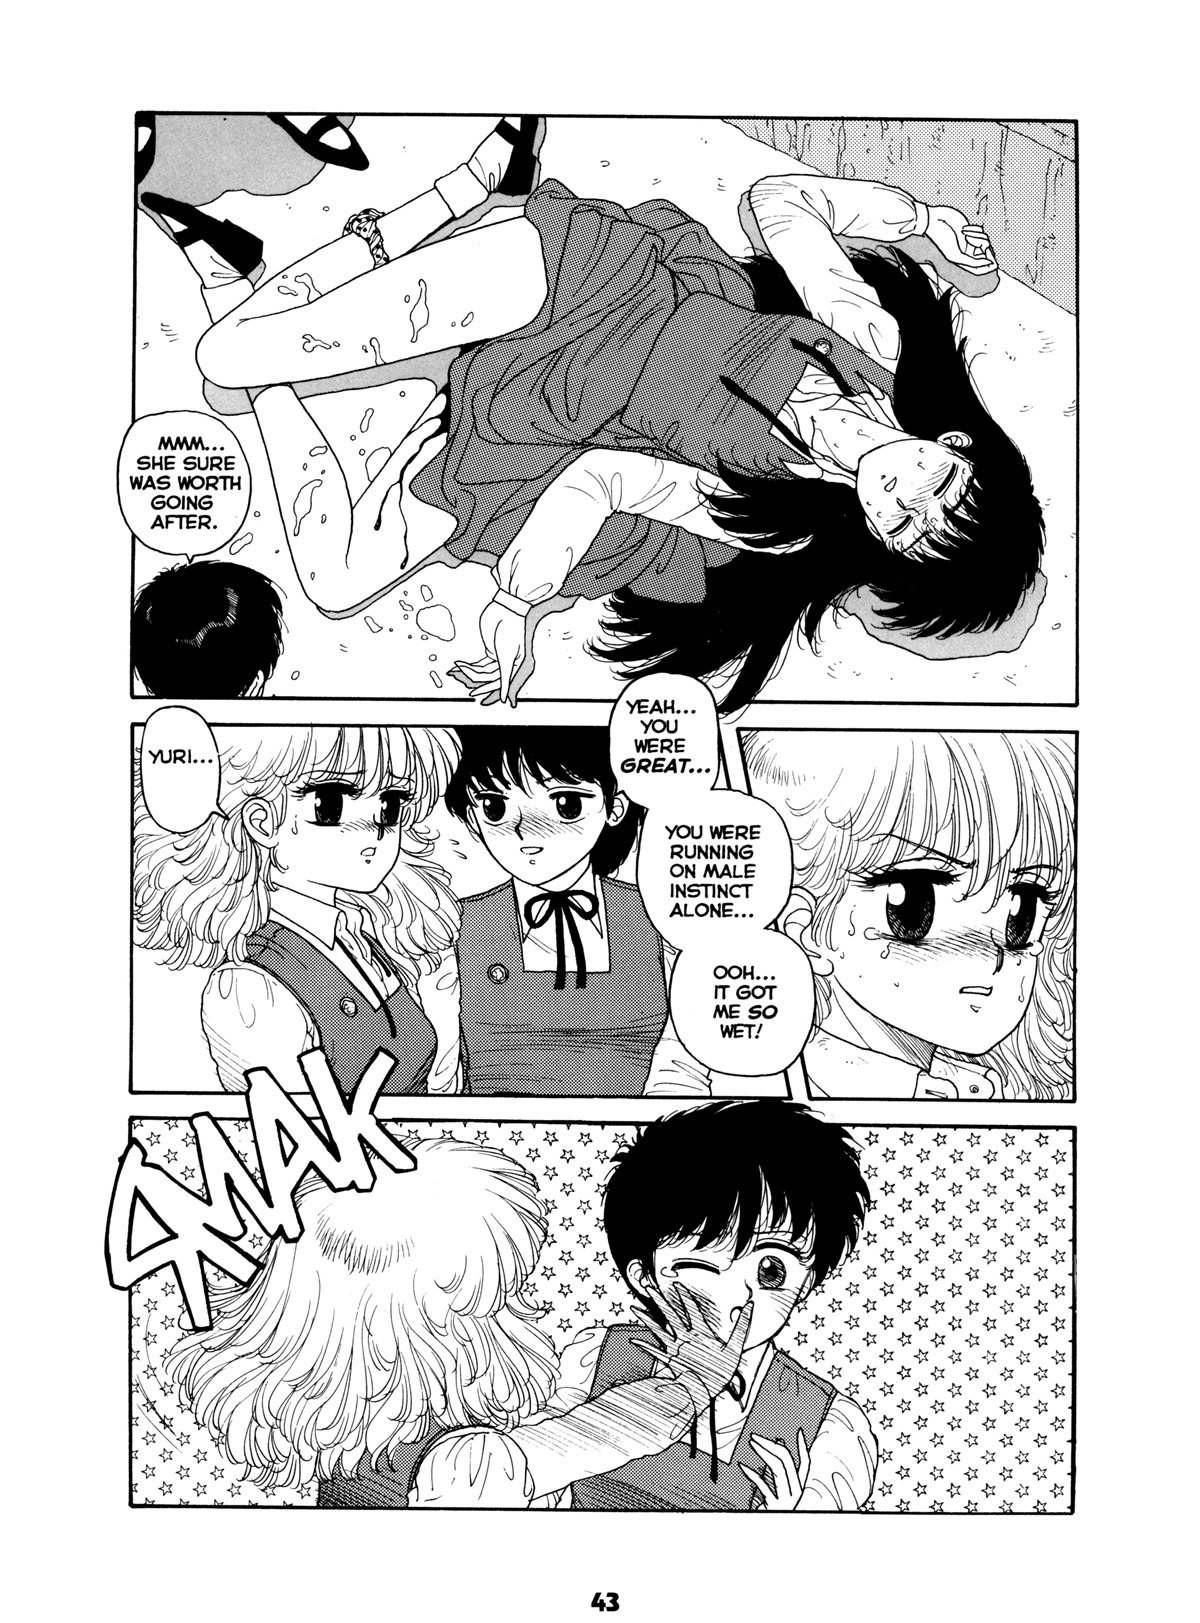 Misty Girl Extreme 42 hentai manga